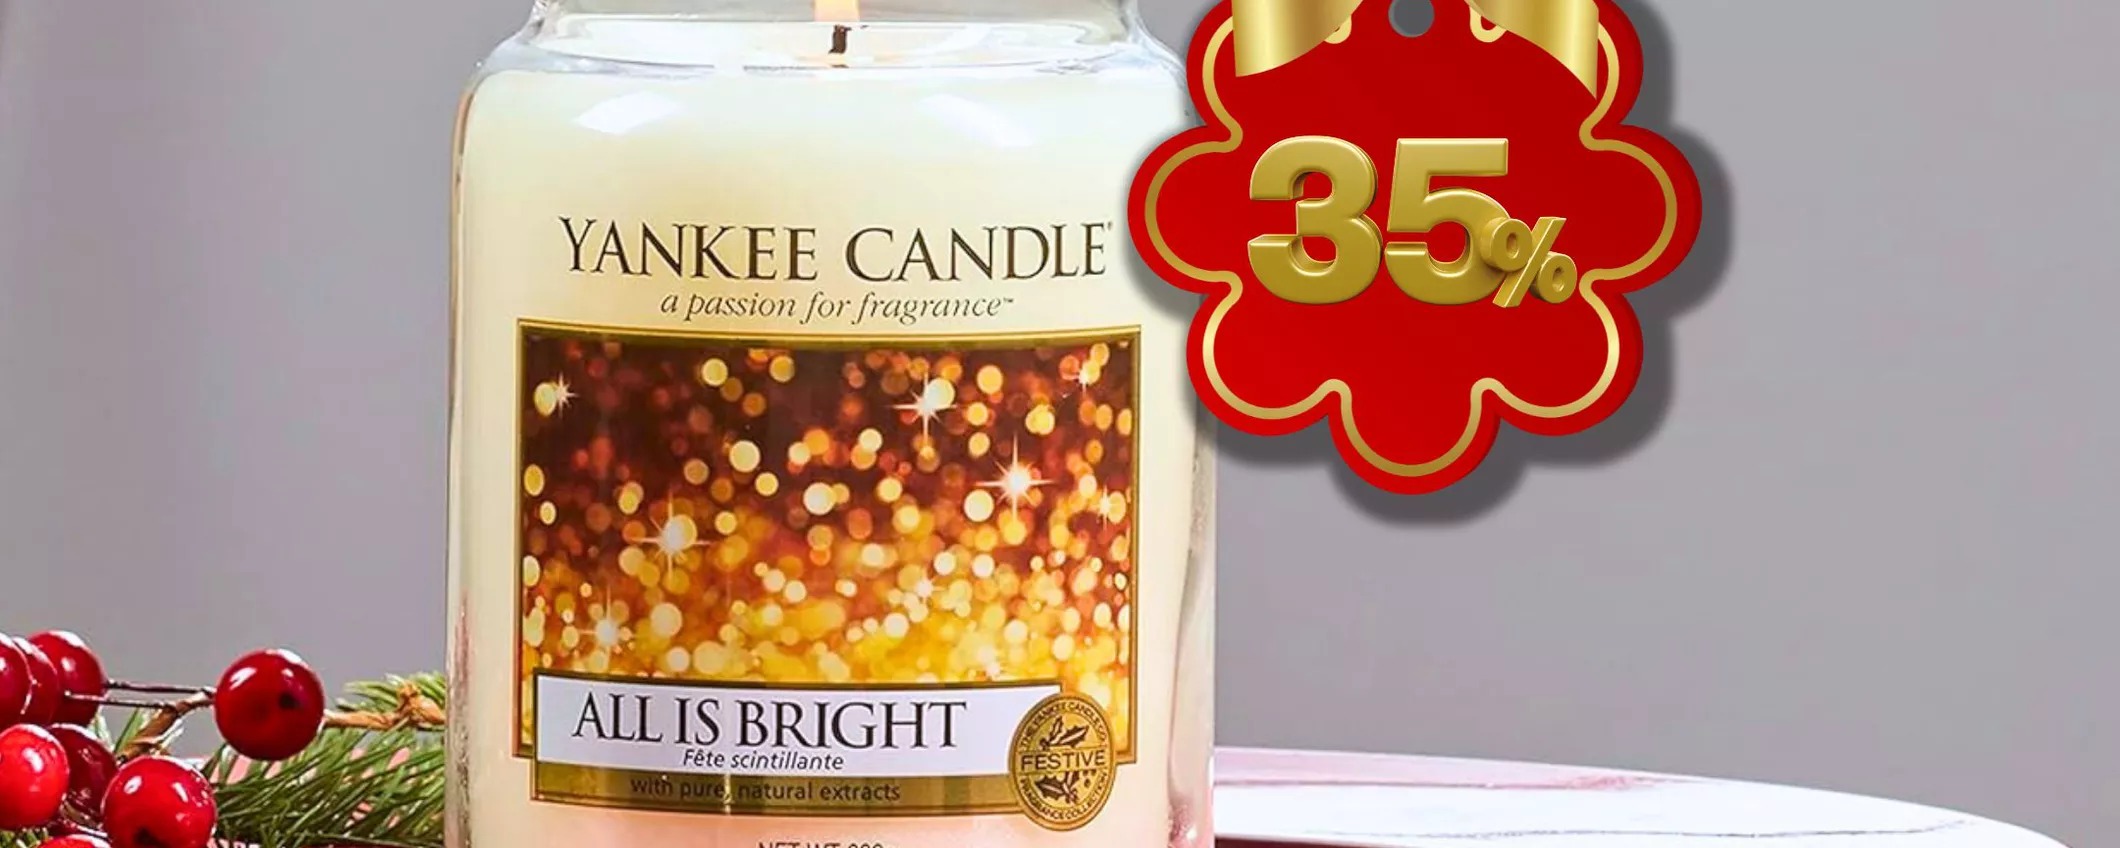 Scopri il Profumo del Natale: Yankee Candle All is bright a Soli 22€ su Amazon!